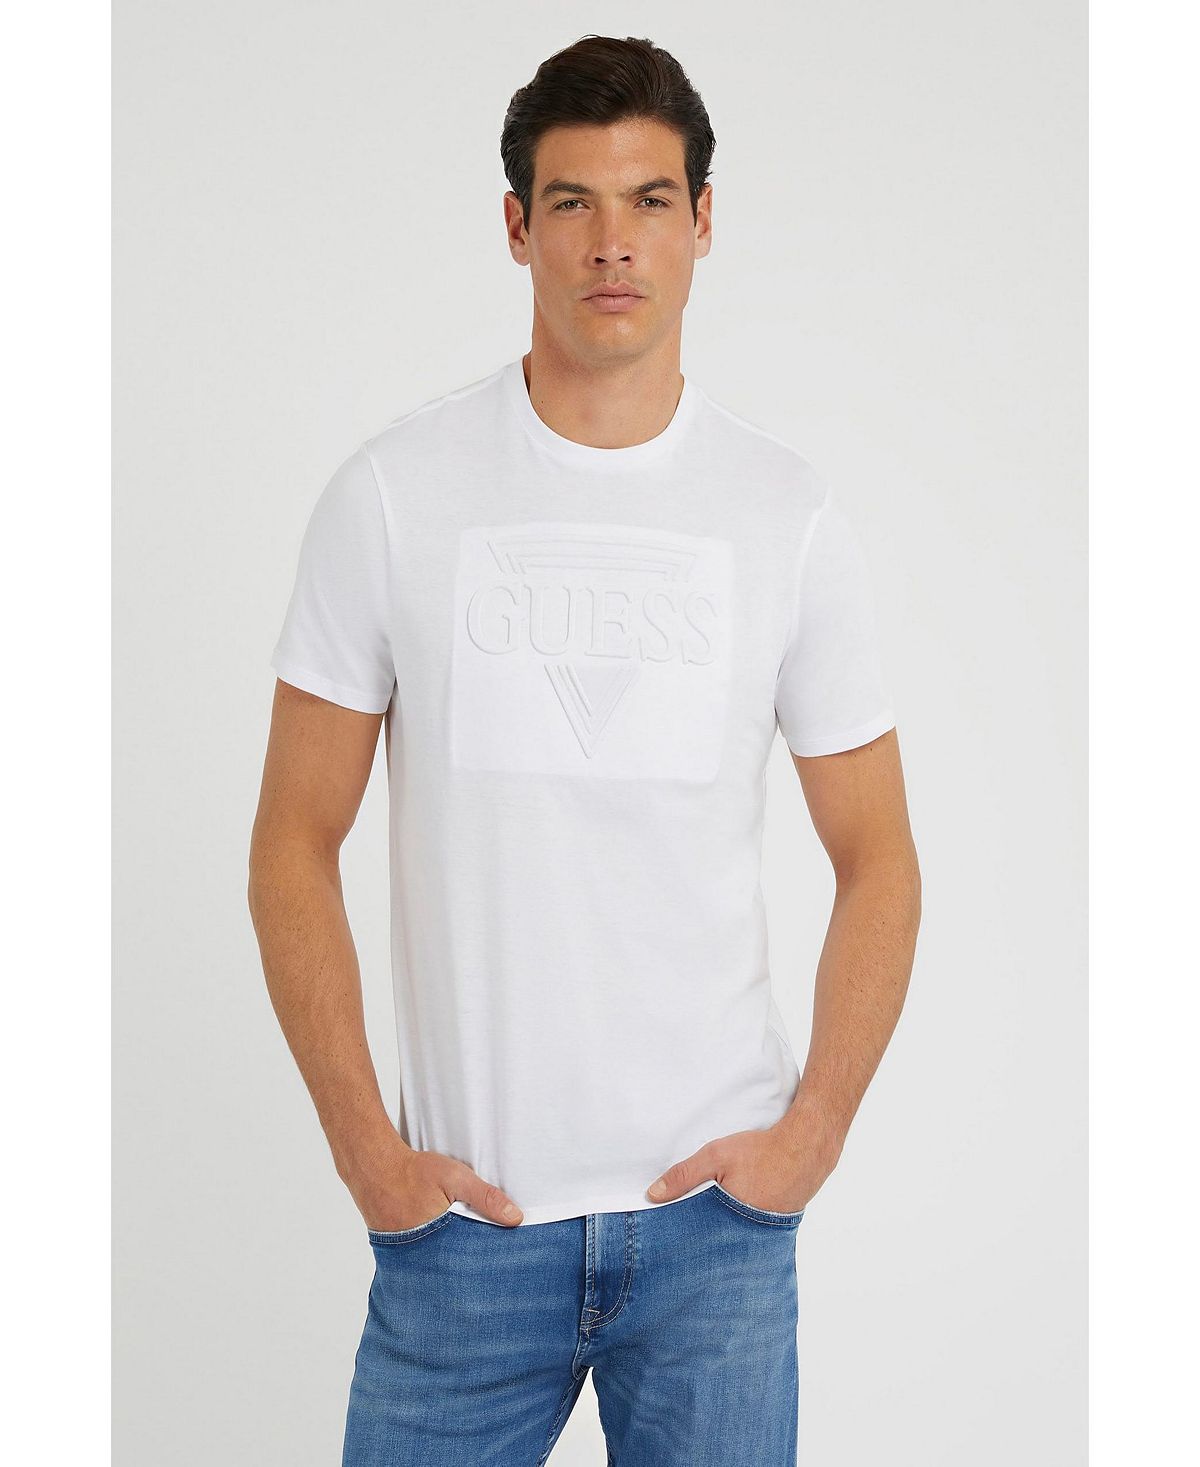 Мужская футболка с коротким рукавом GUESS с тиснением цена и фото